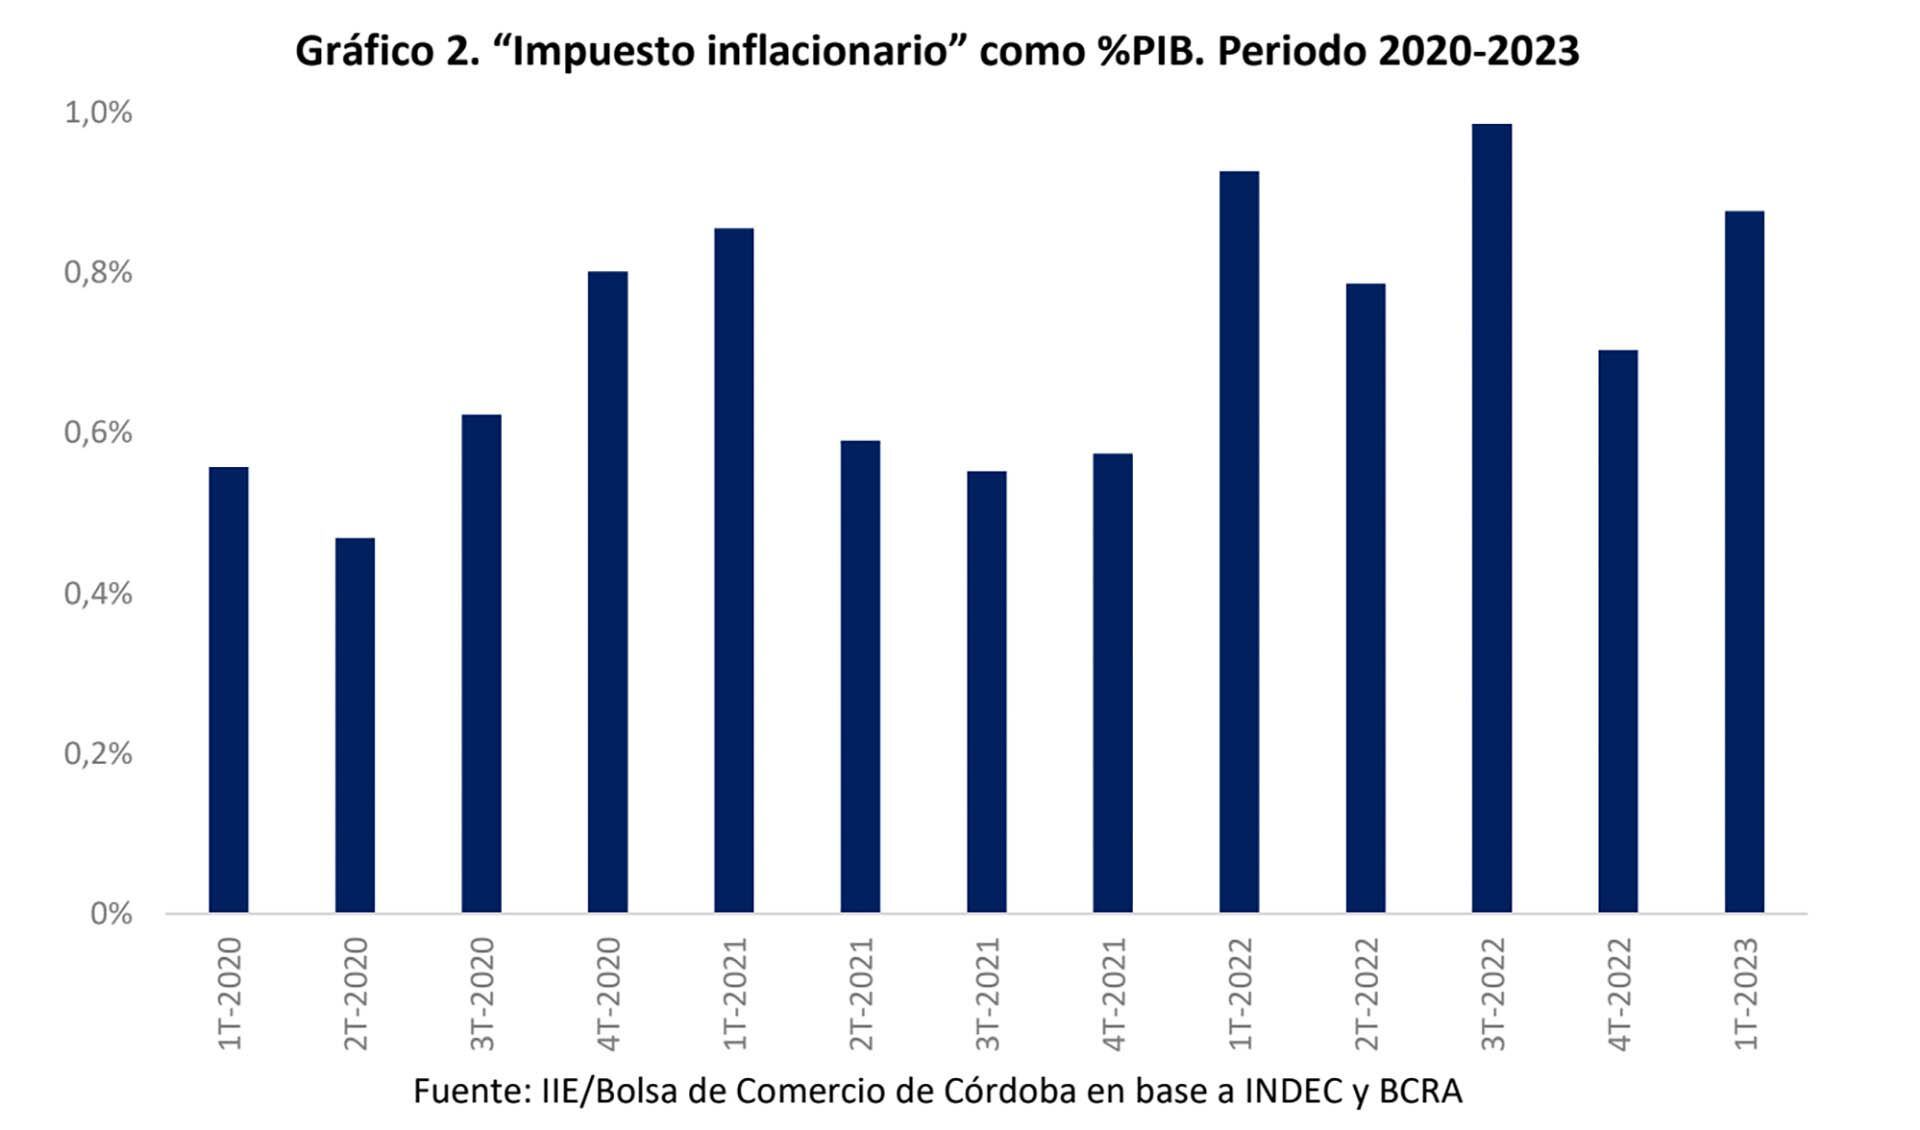 Bolsa de Comercio de Córdoba - inflación y emisión monetaria